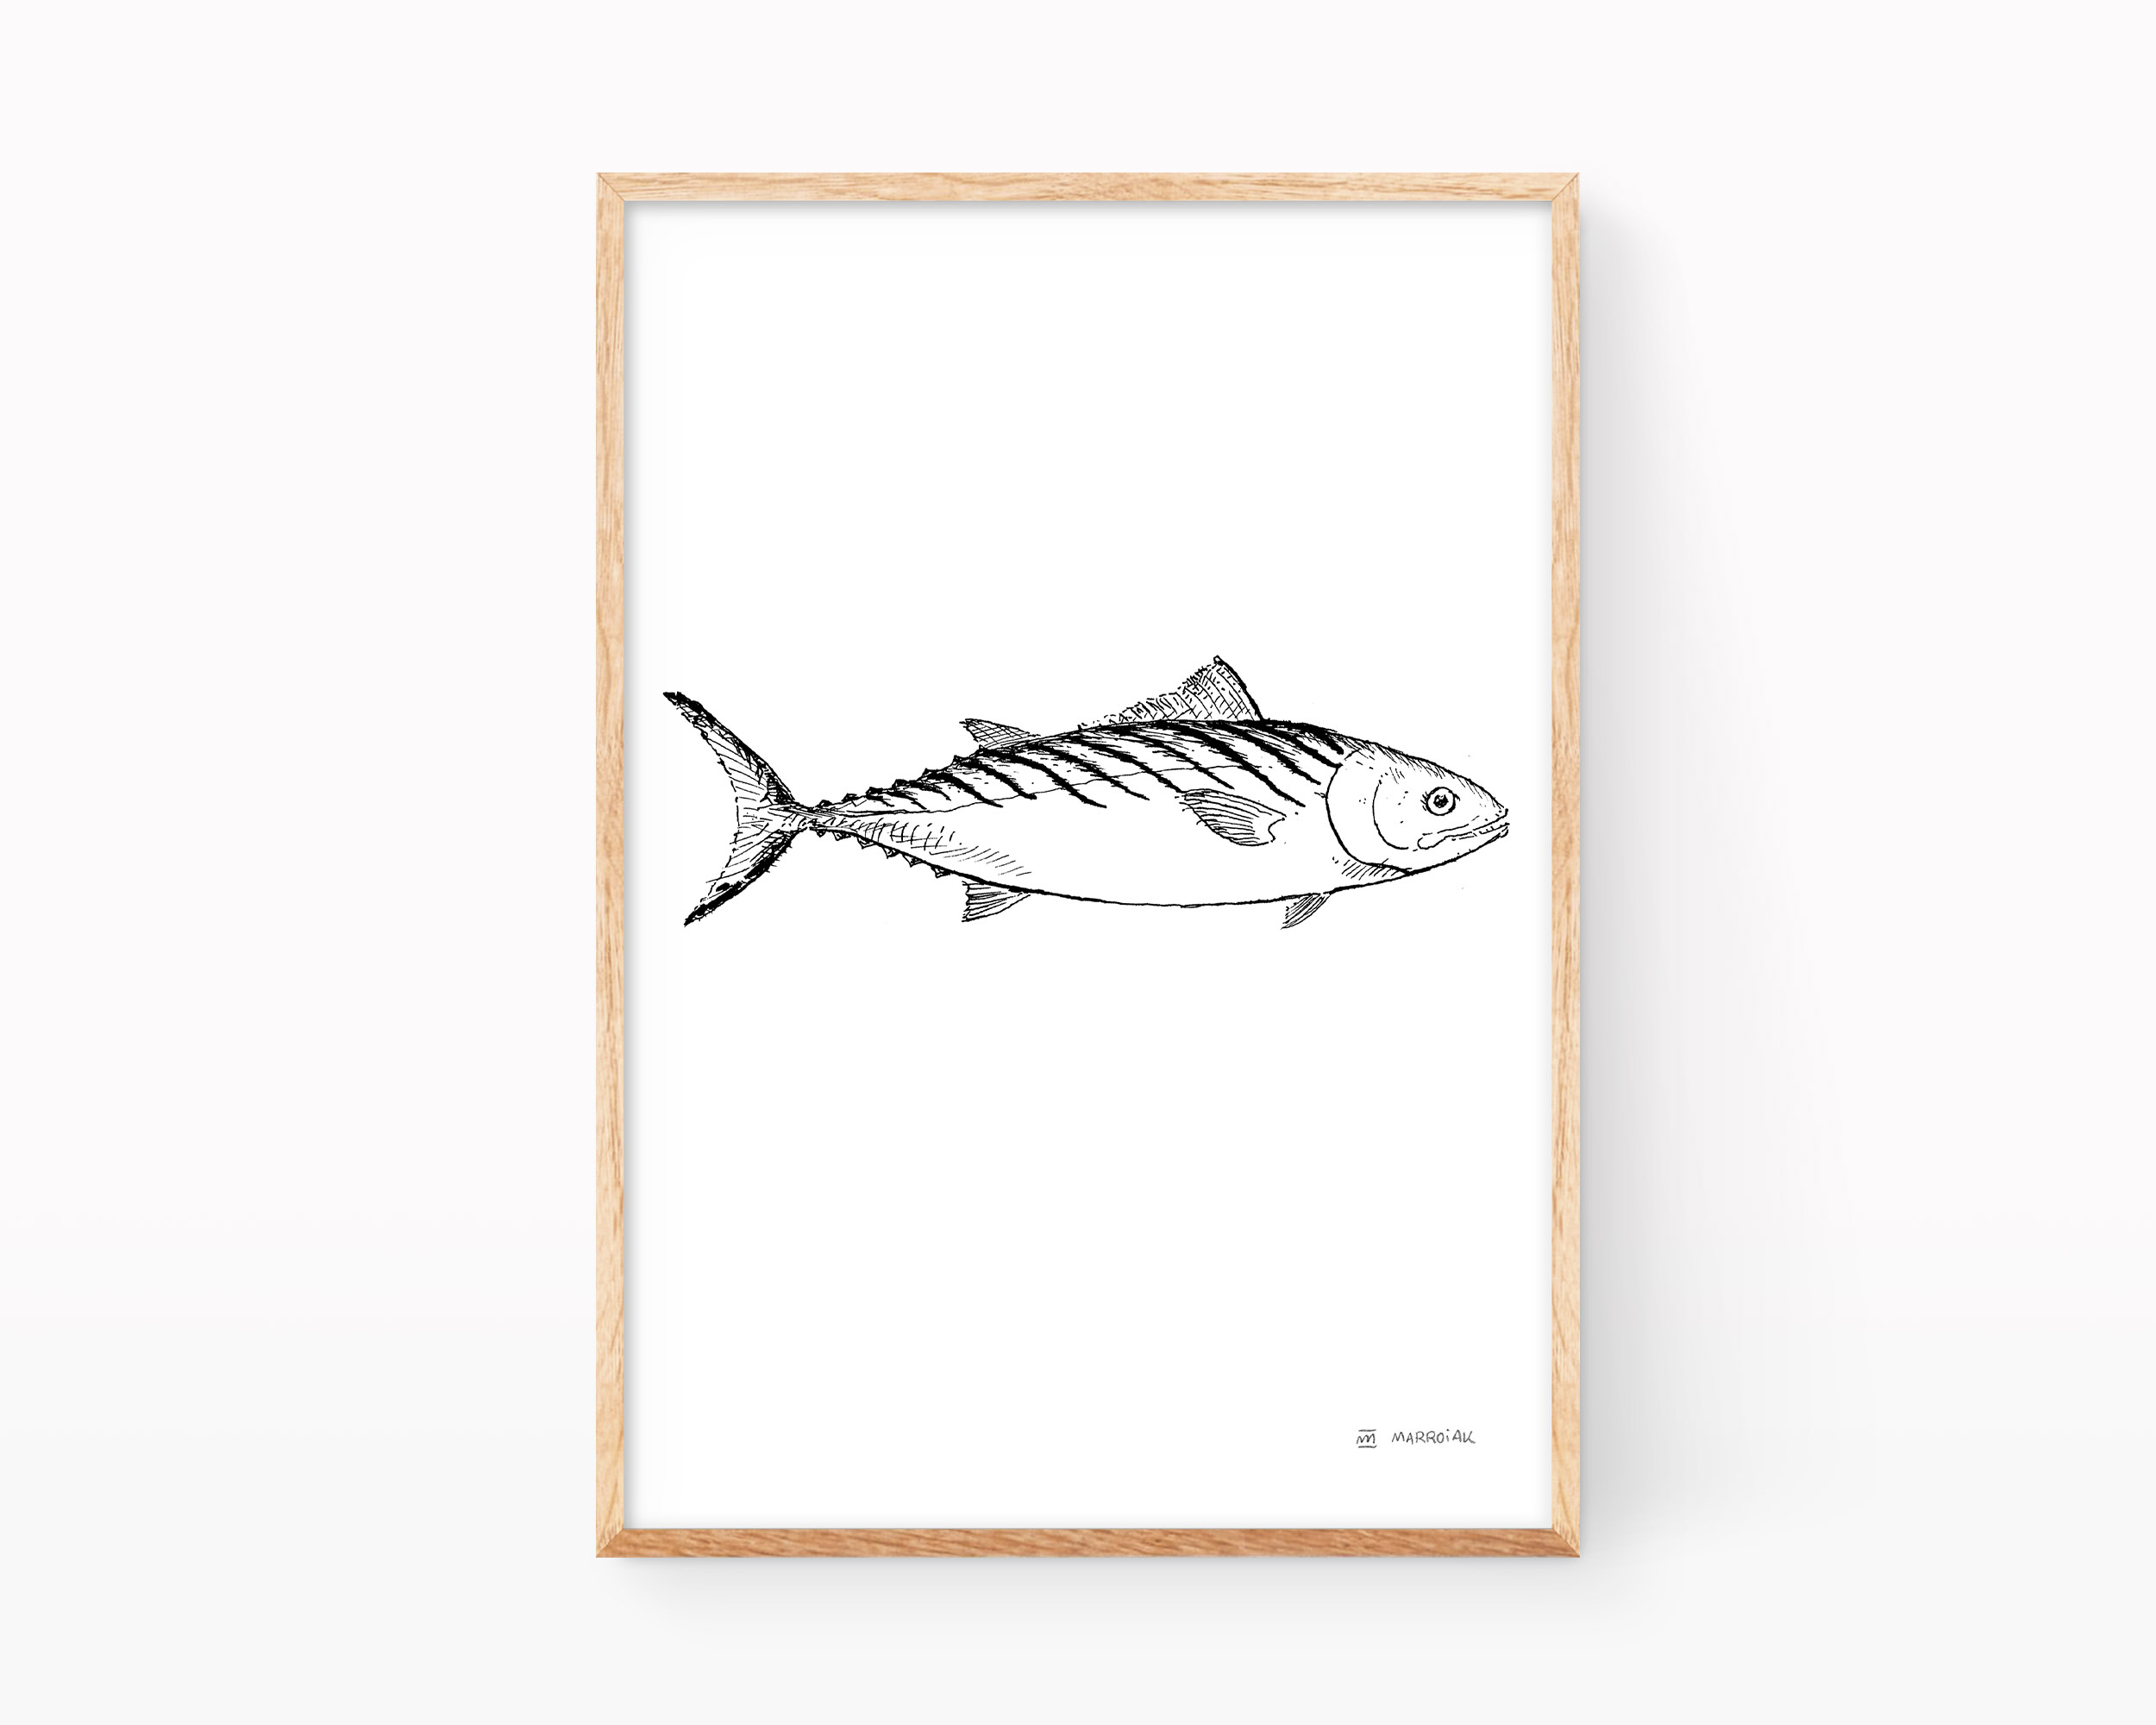 Lámina con una ilustración en blanco y negro del pescado conocido como Bonito (Sarda Sarda). Dibujo a tinta.